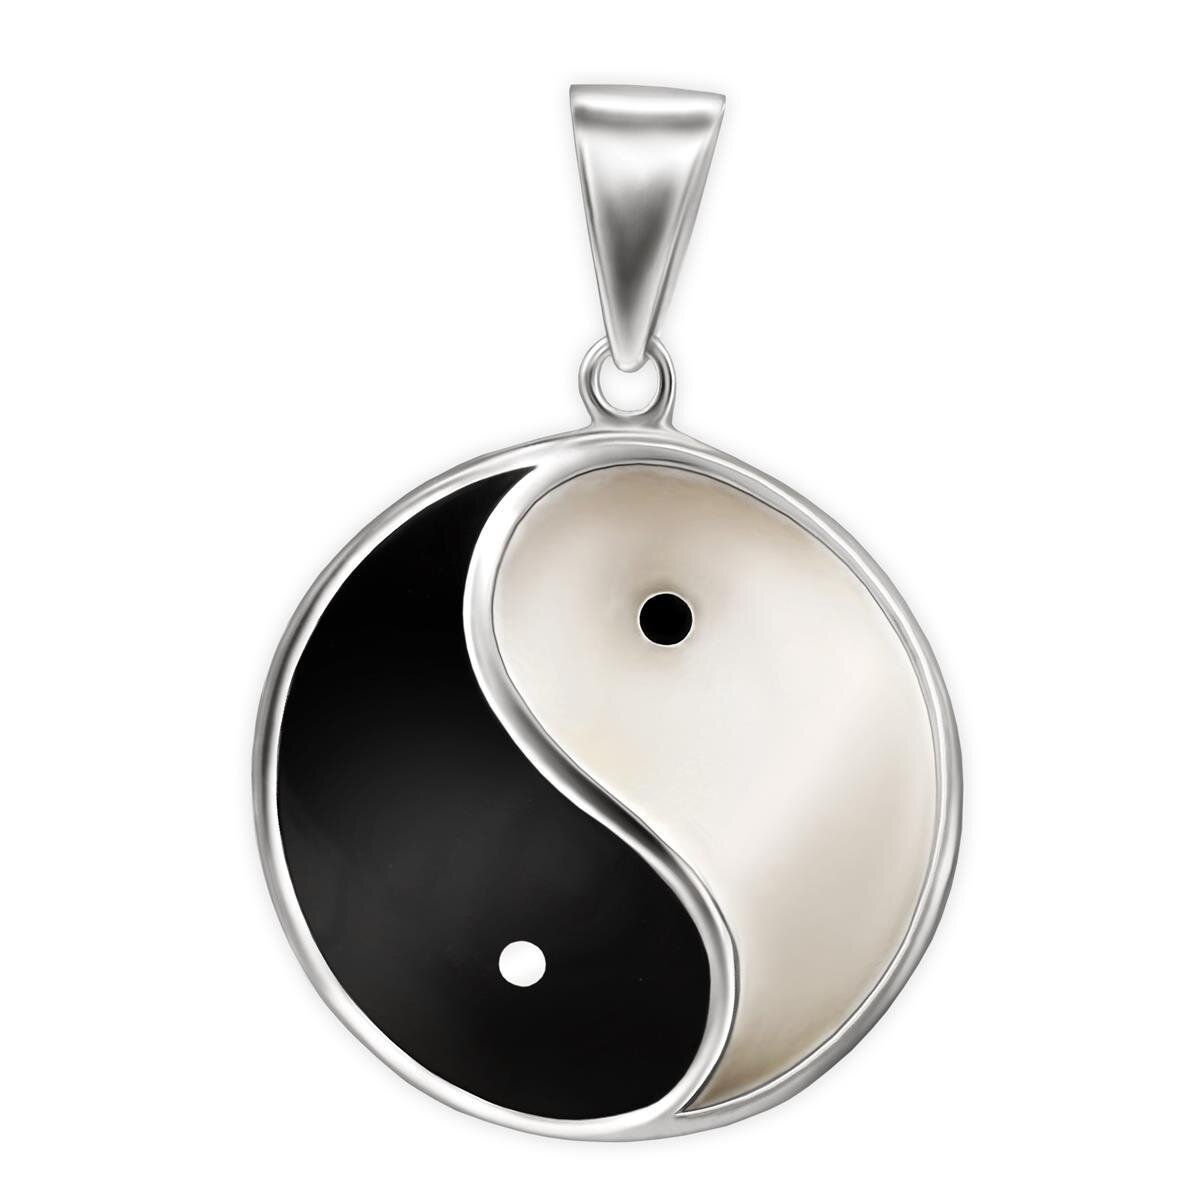 Anh&auml;nger Yin Yang 32 mm gro&szlig; lackiert Echt Silber 925